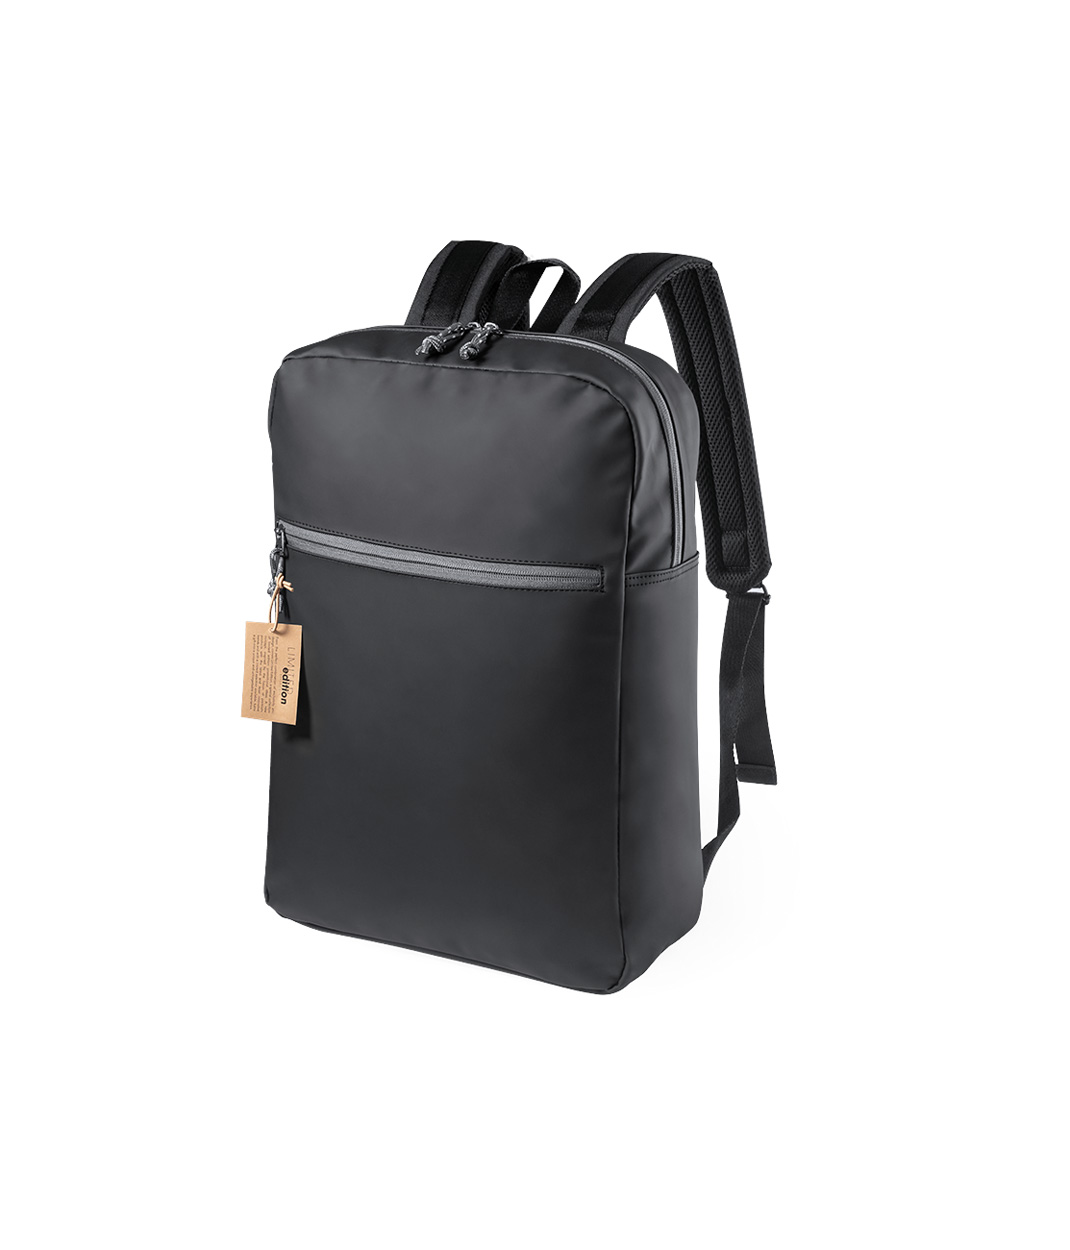 Sulust backpack - black